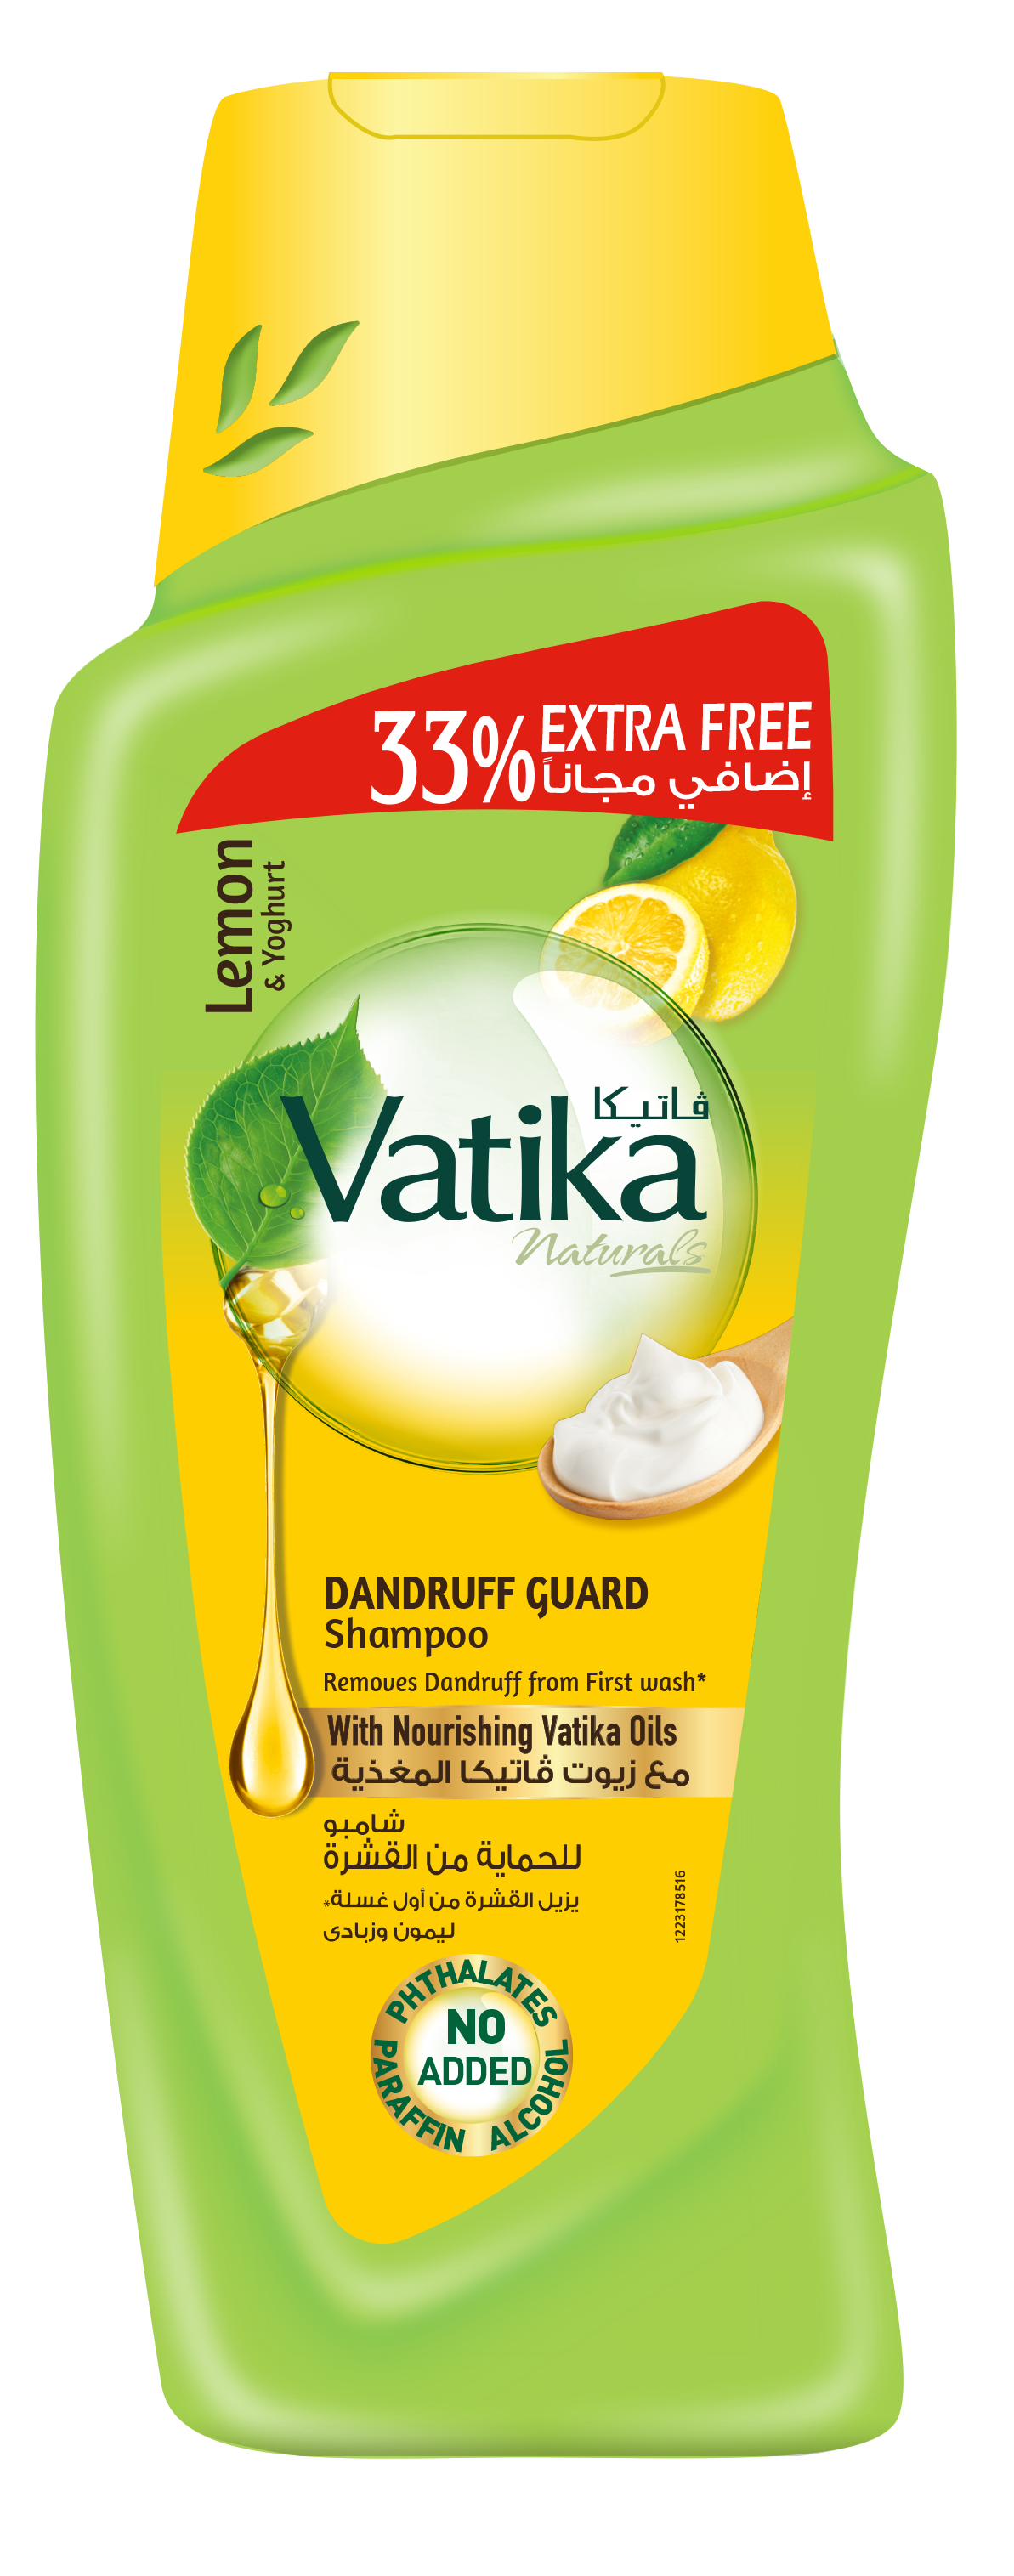 Шампунь для волос Dabur VATIKA Naturals Dandruff Guard Против перхоти 532 мл calin шампунь против перхоти баланс свежести 500